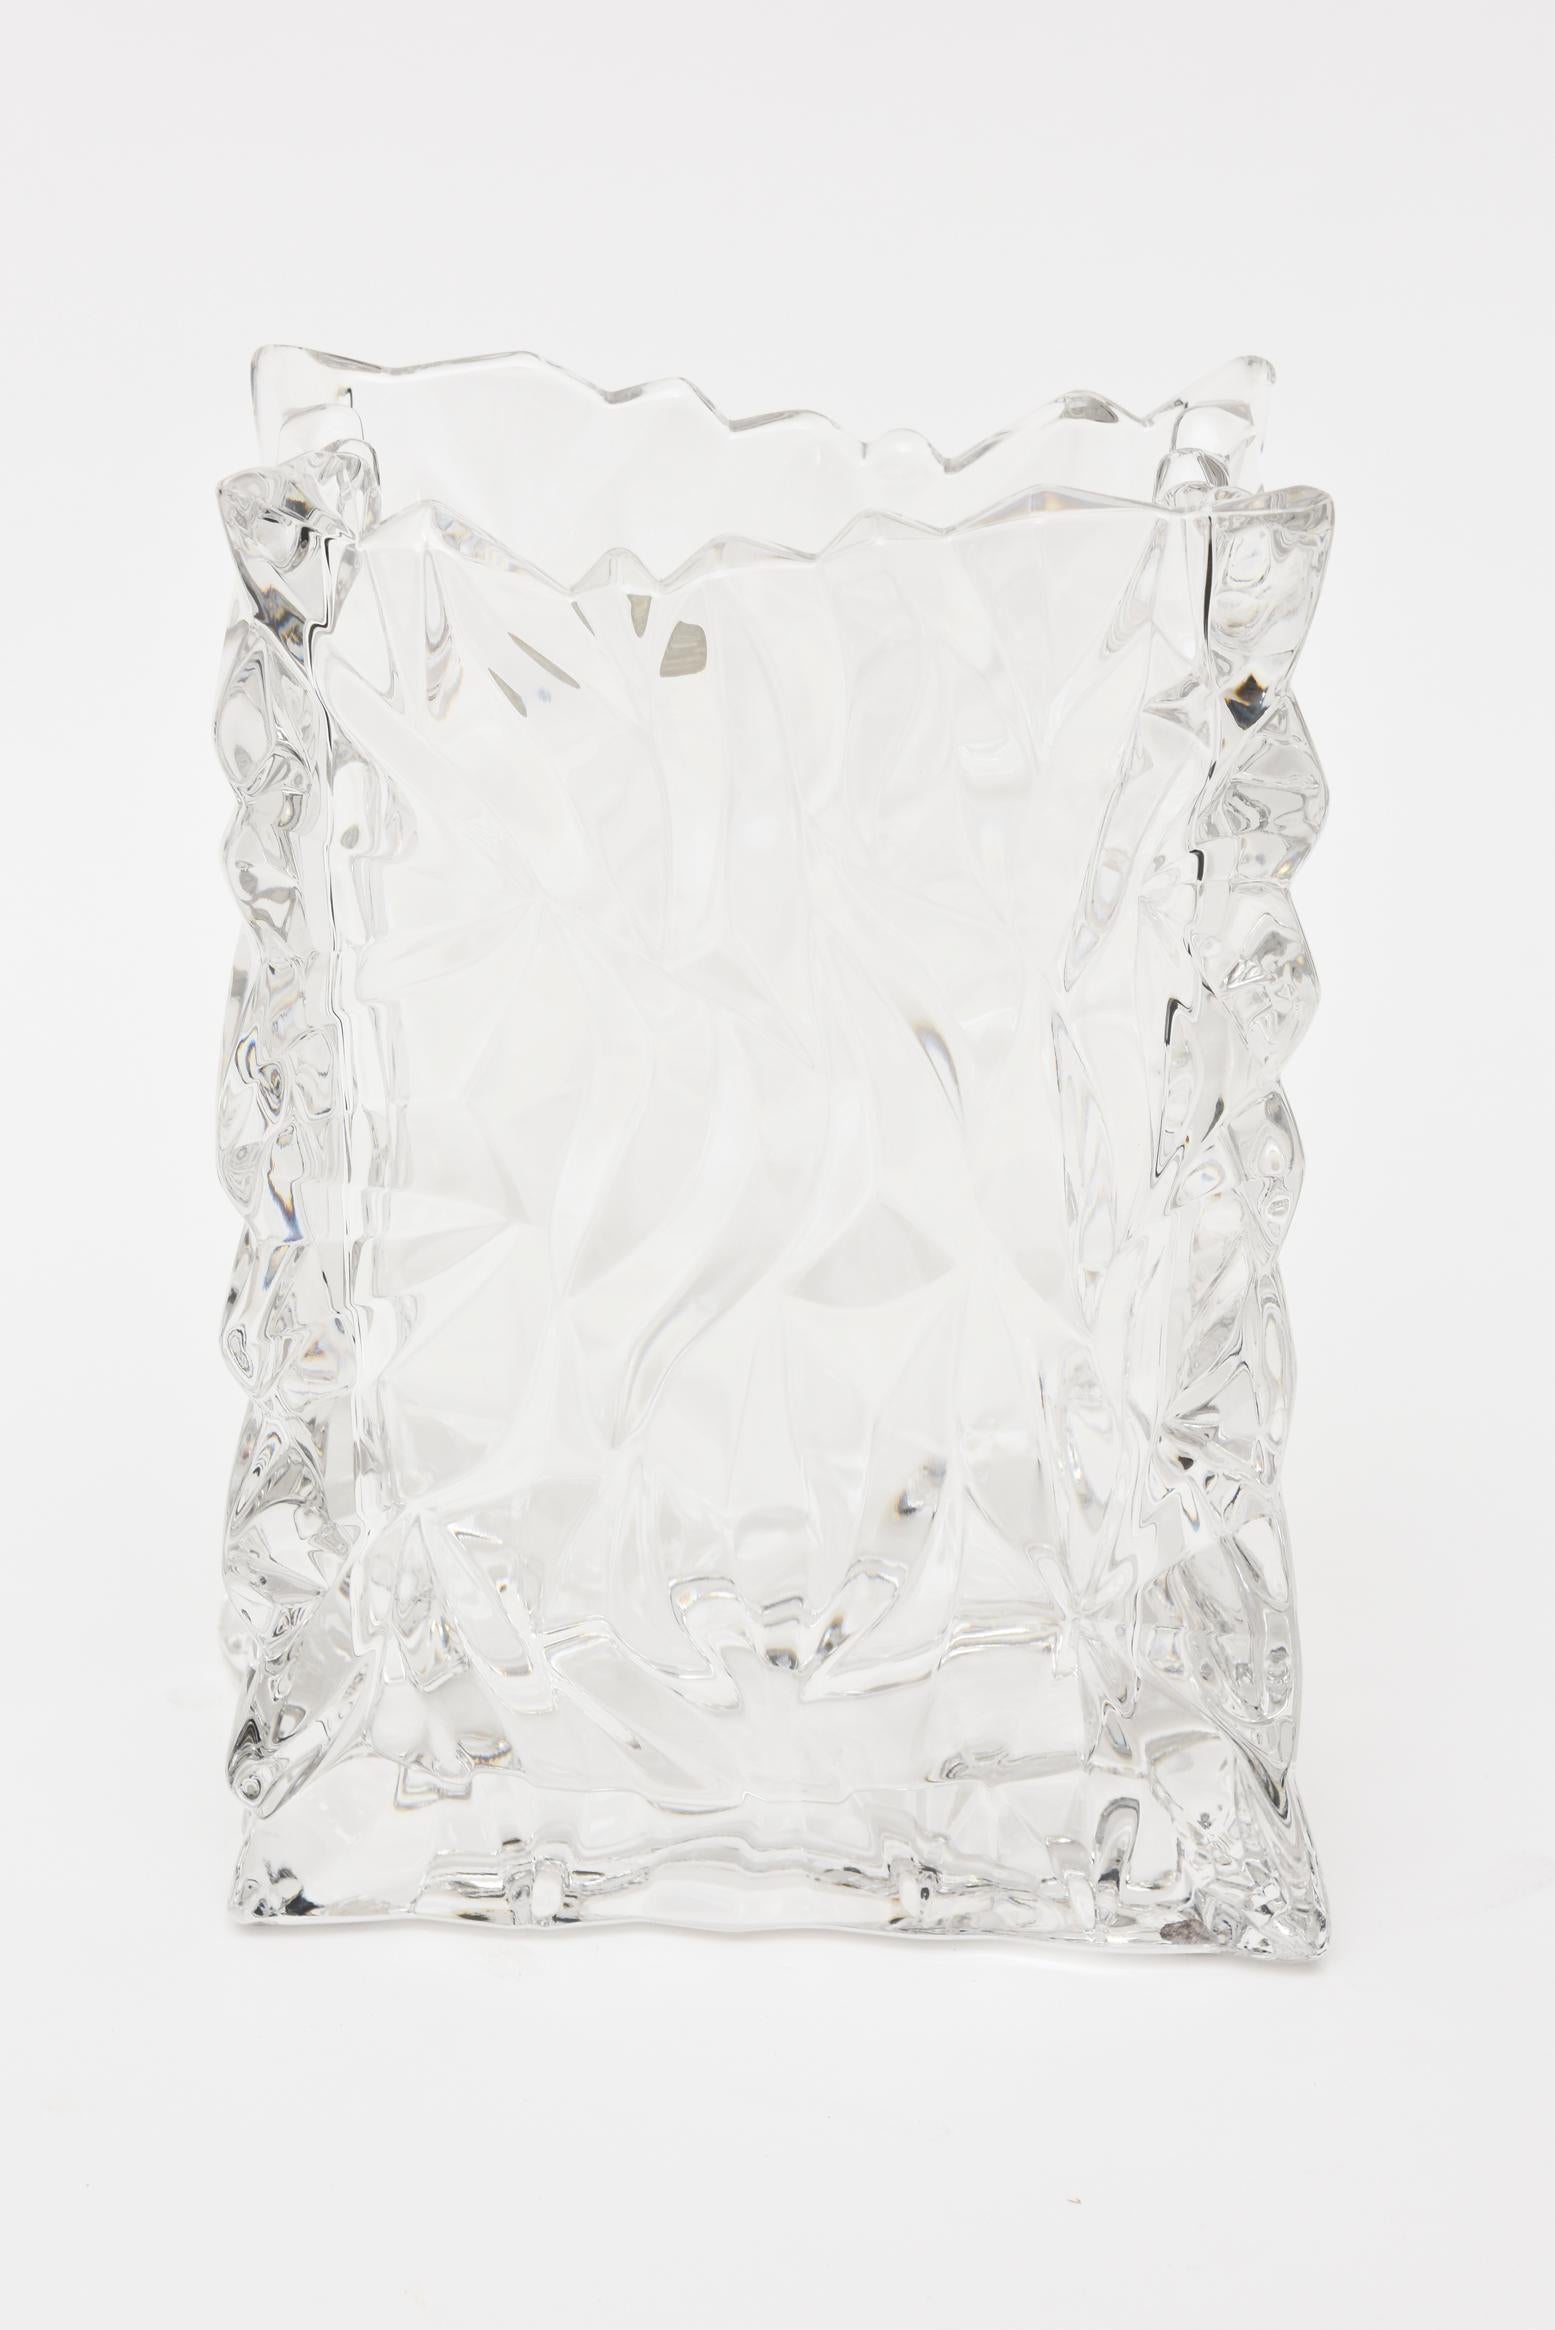 Diese strukturierte Vase aus Bleikristallglas stammt von Rosenthal aus der Studio Line Germany. Es ist die Papiertütenform in Kristall. Das Lichtspiel der Oberflächenformen ist wunderschön. Es ist vintage, strukturiert und schwer und stammt aus den